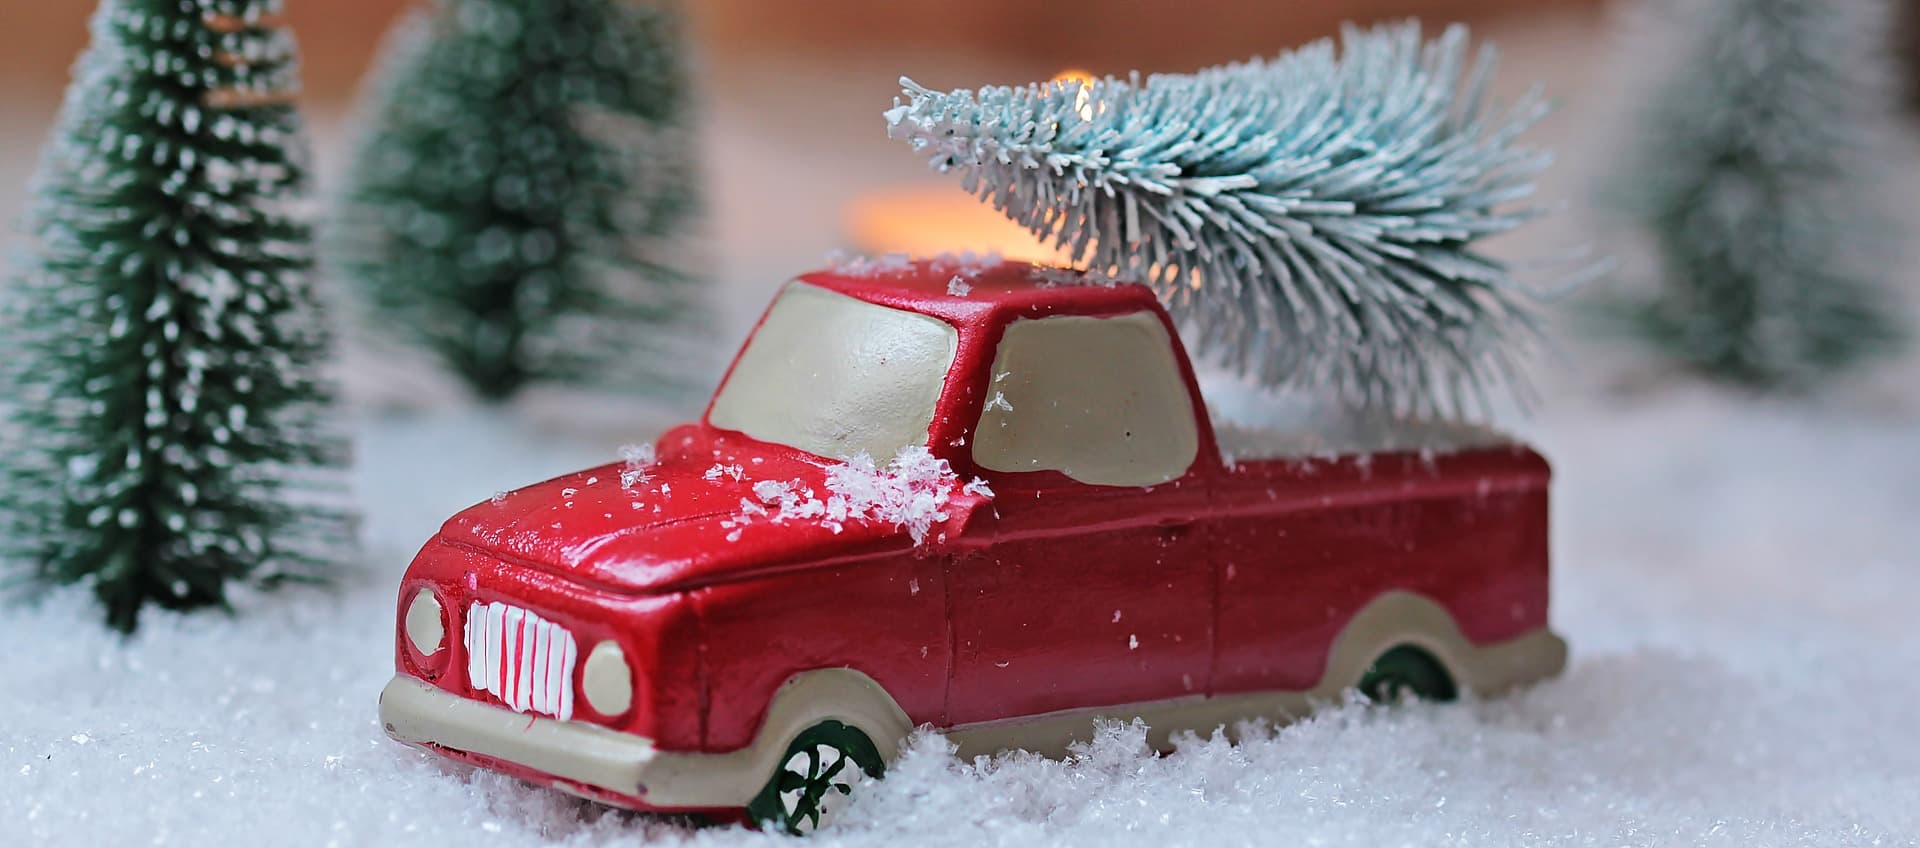 Weihnachtsbaum mit dem Auto transportieren